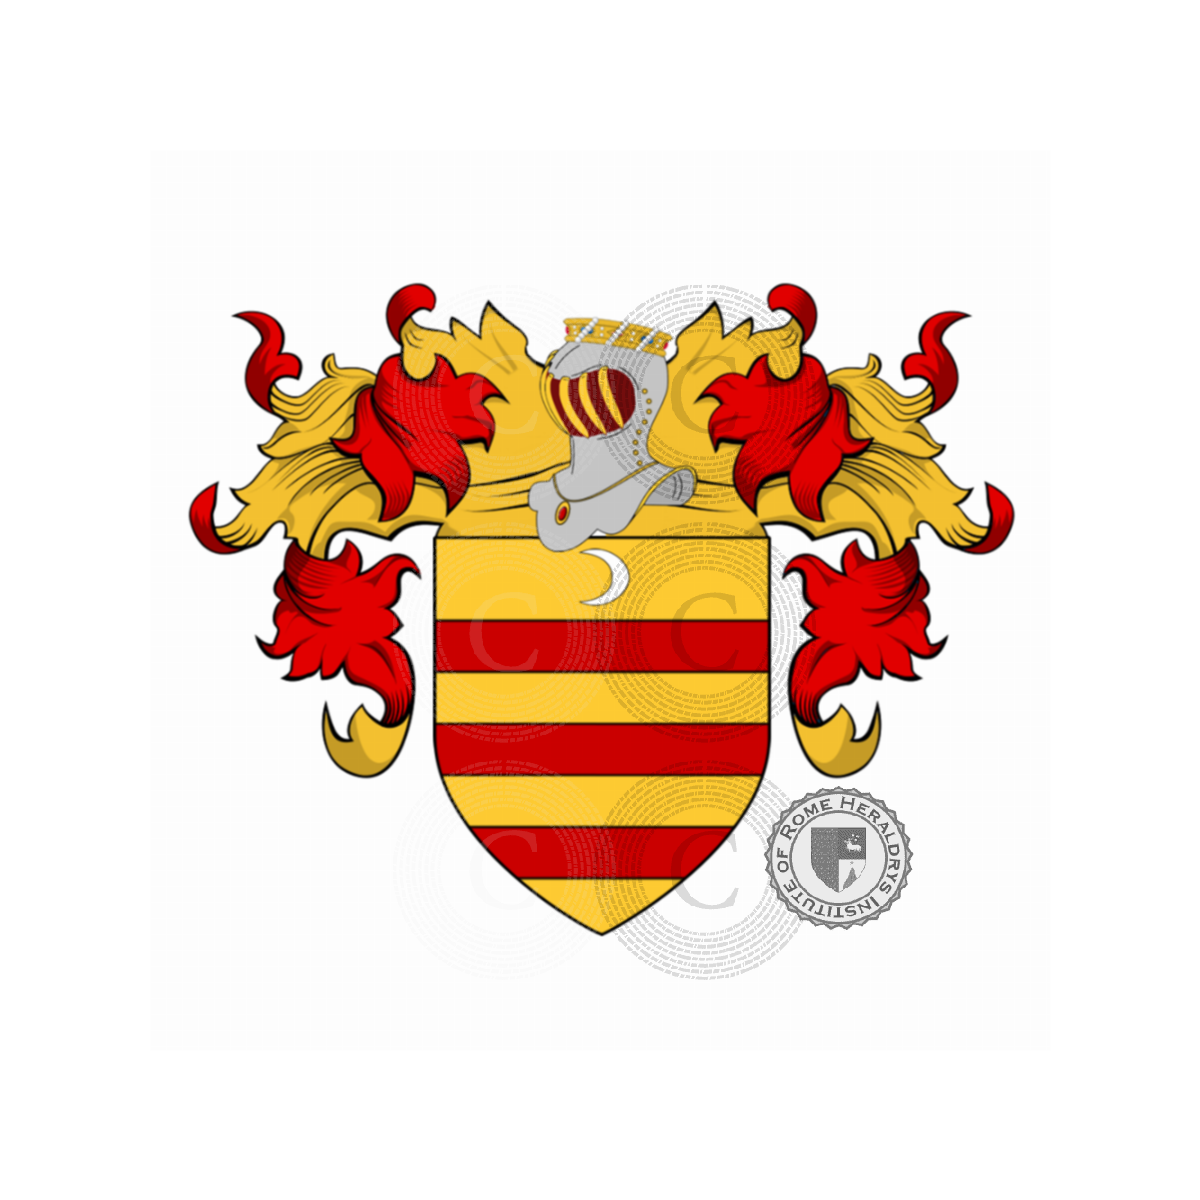 Wappen der FamilieVernazza